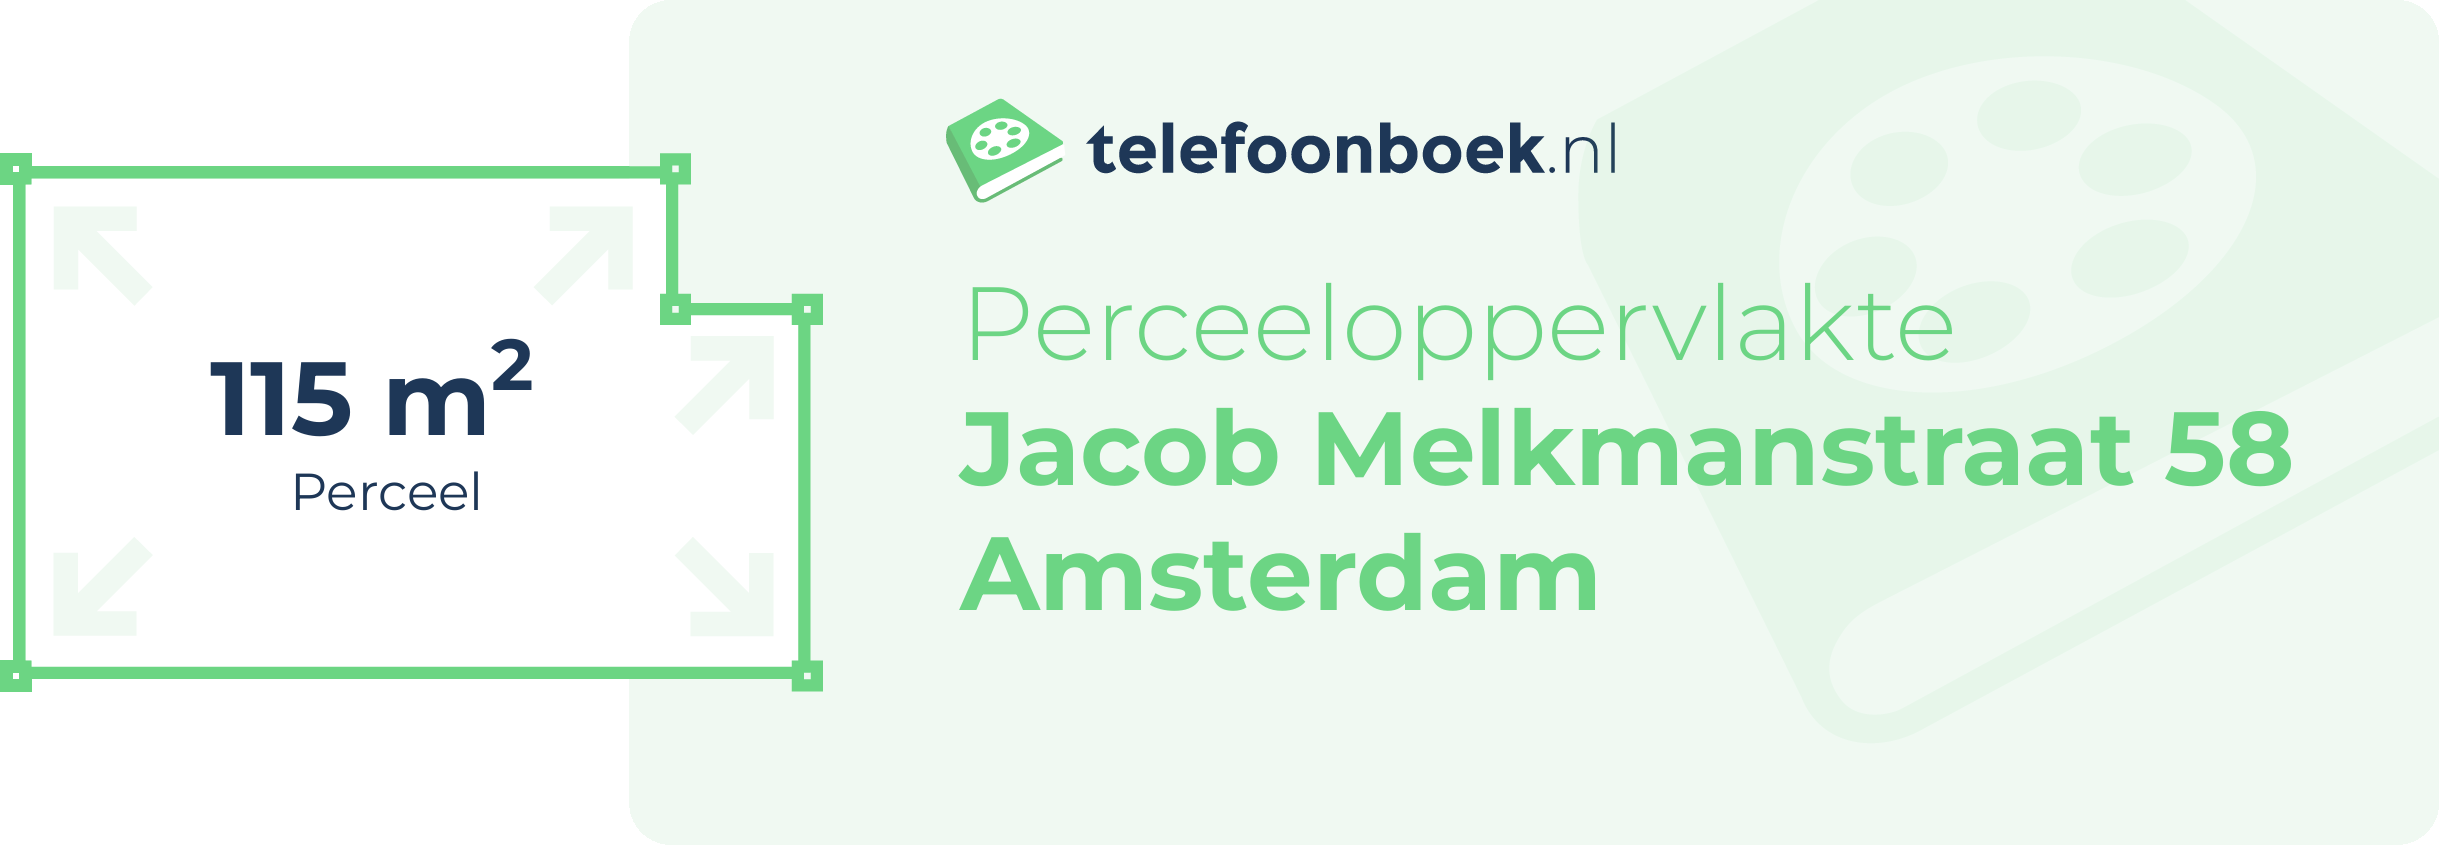 Perceeloppervlakte Jacob Melkmanstraat 58 Amsterdam